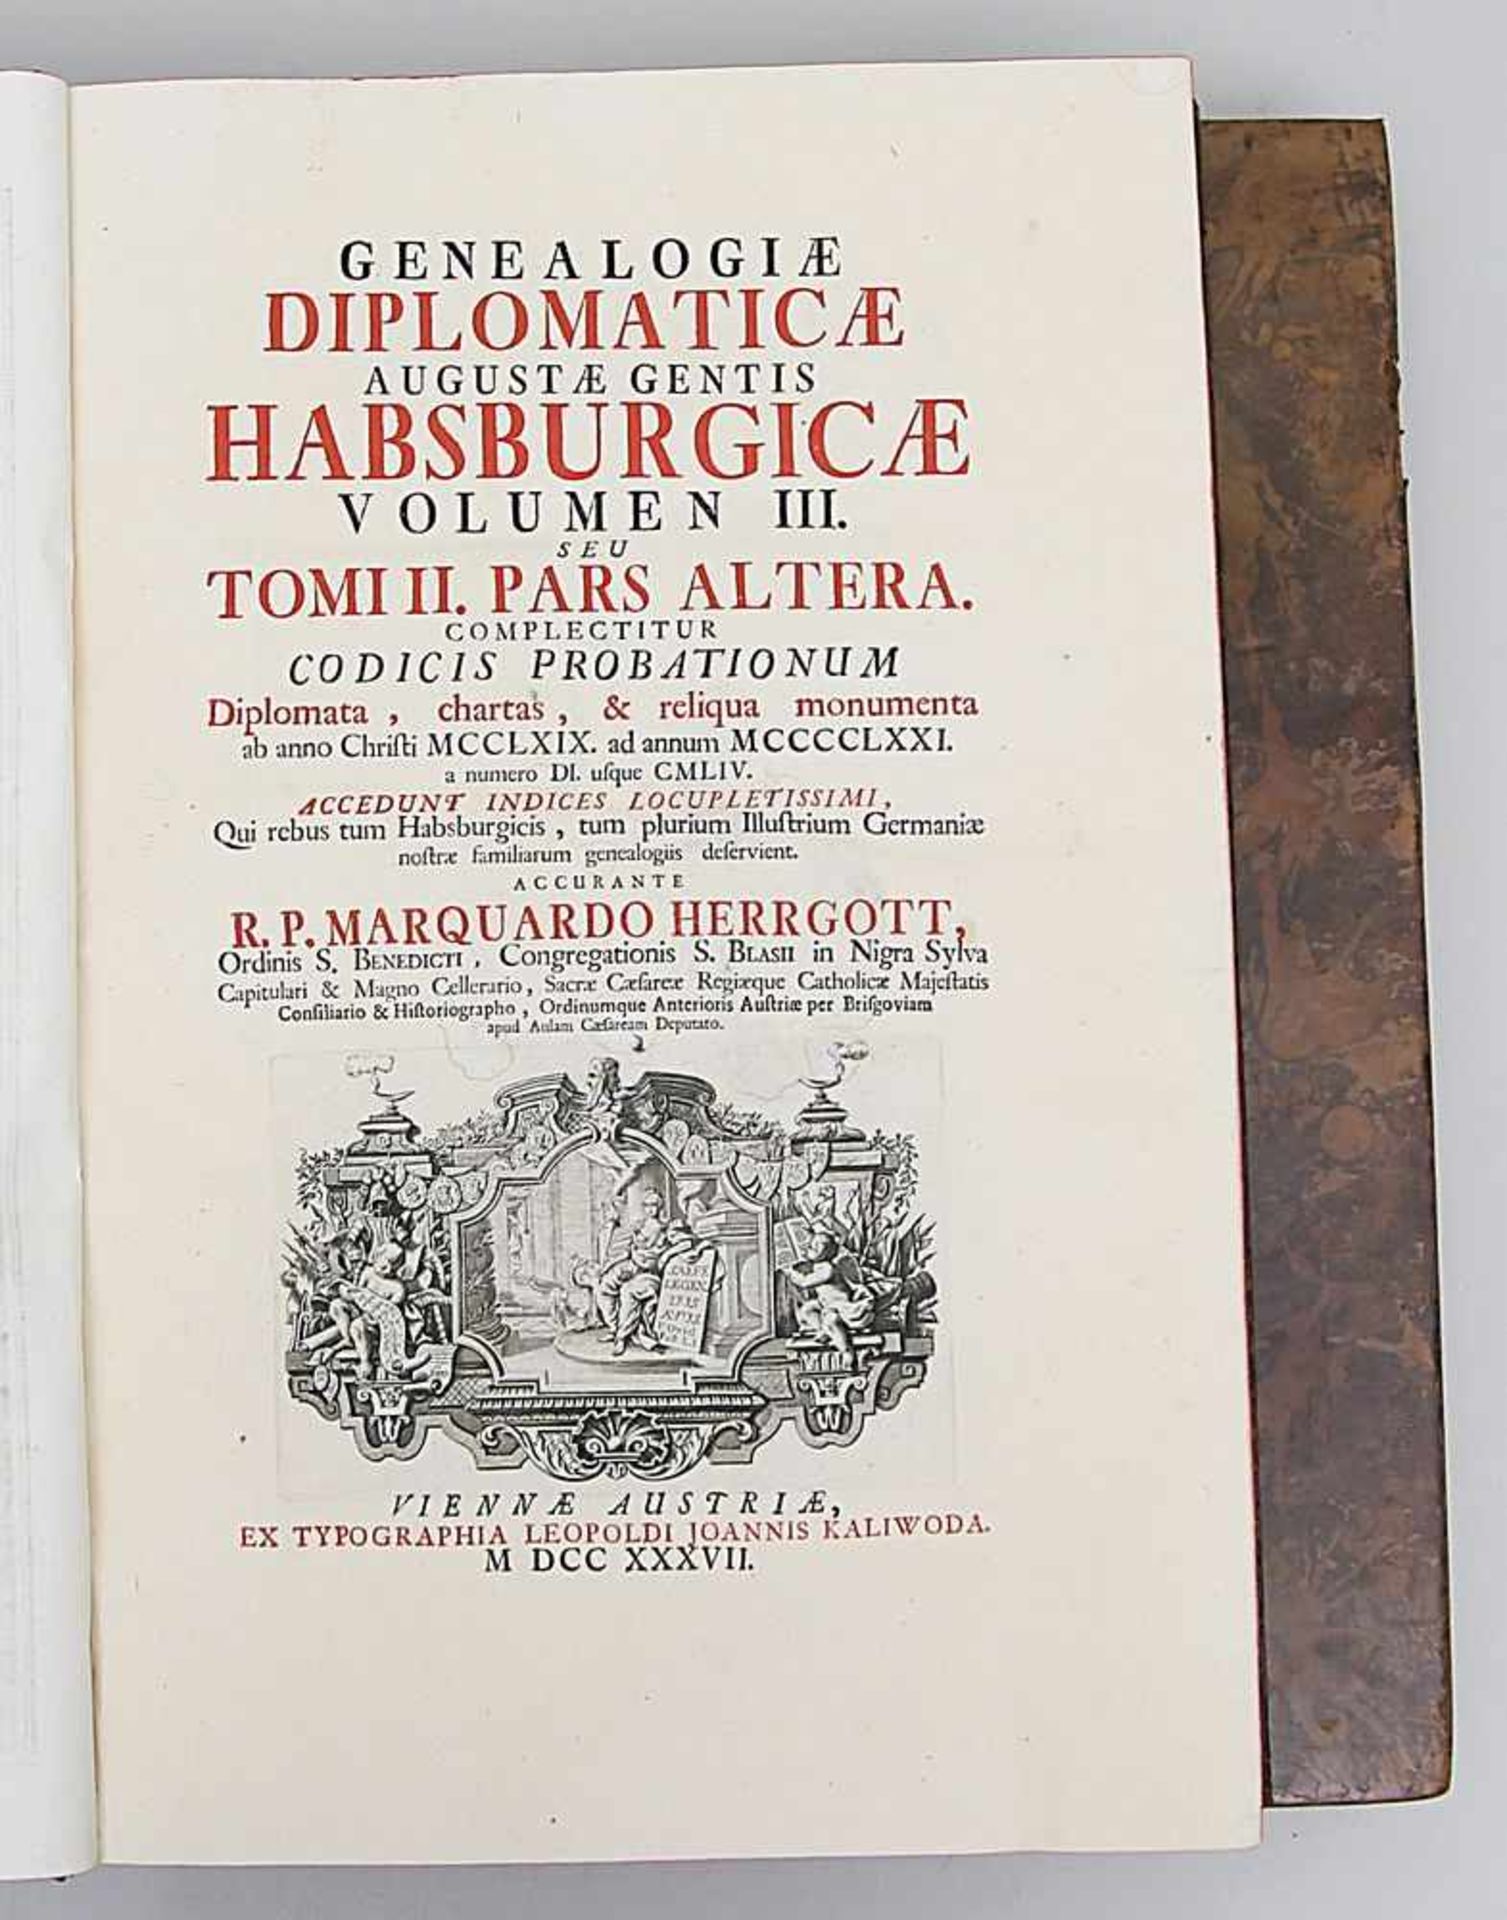 "Genealogiae diplomaticae augstae gentis Habsburgicae""accurante R. P. Marquardo Herrgott",